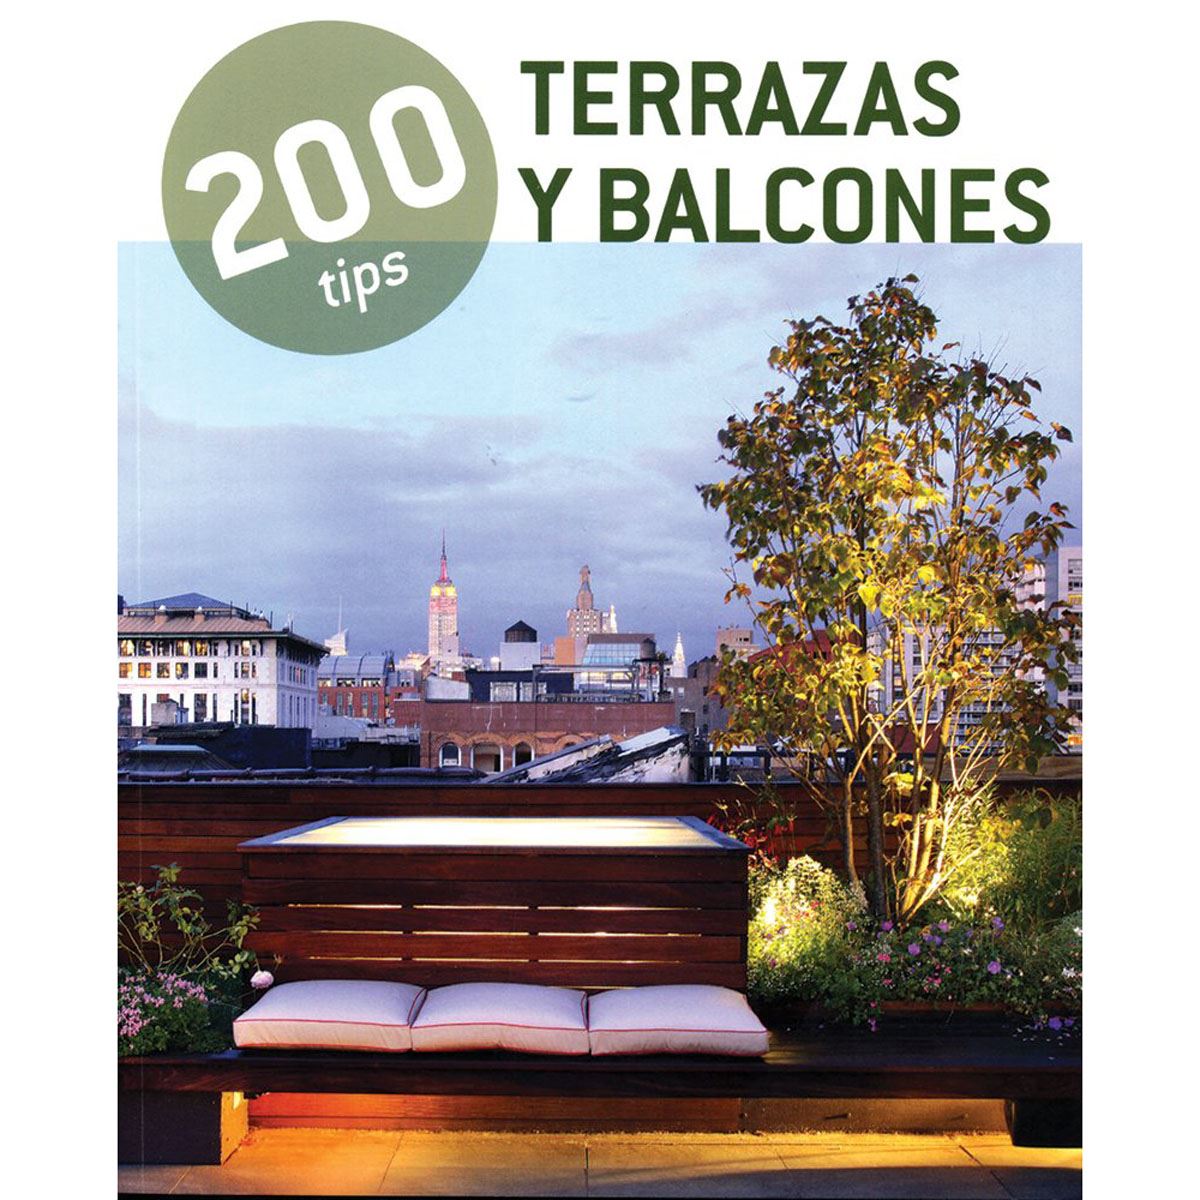 200 Tips&#58; Terrazas Y Balcones